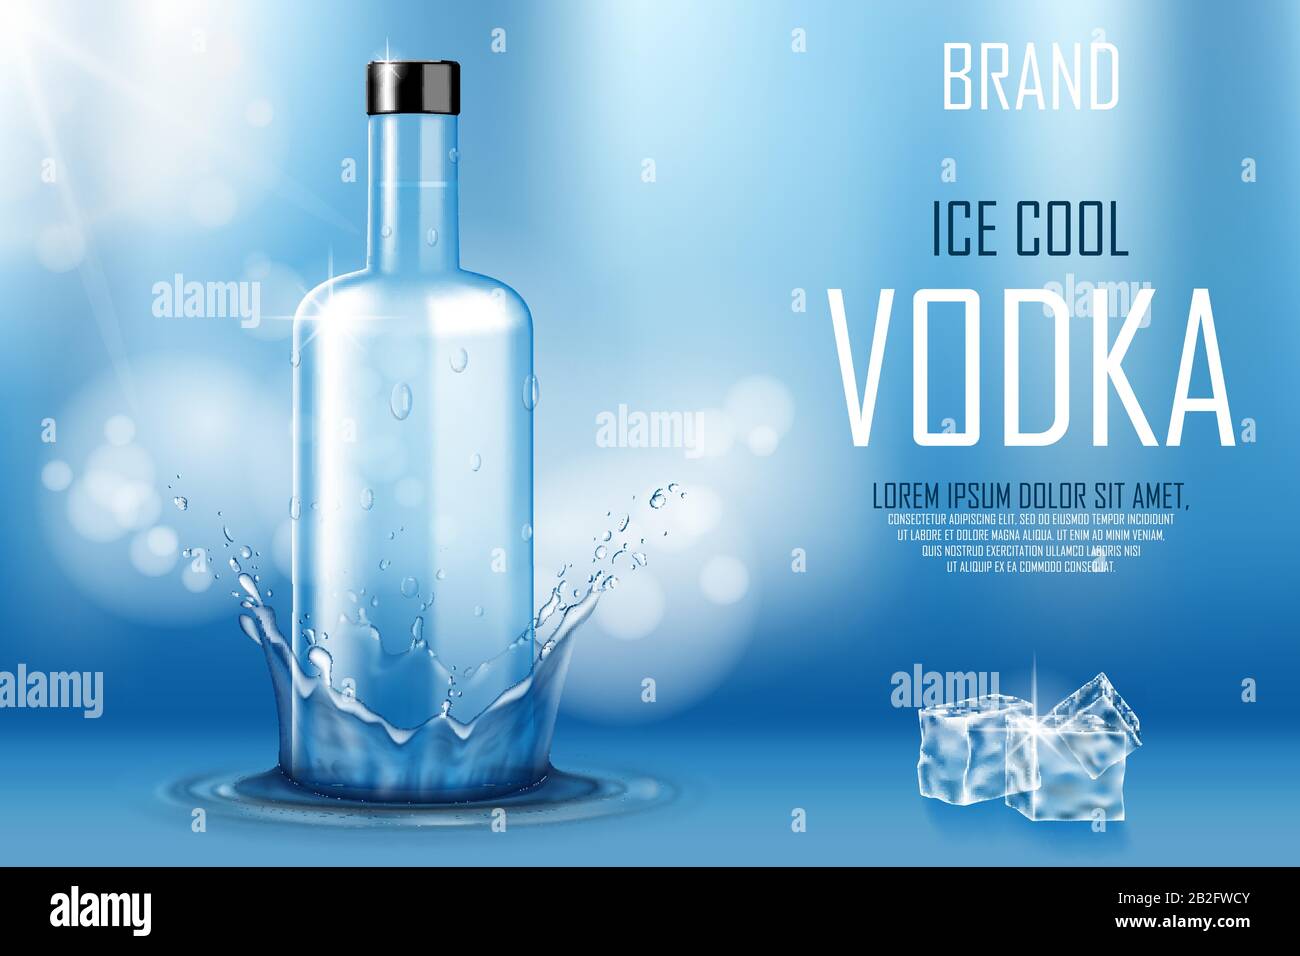 Bottiglia di vodka con cubetti di ghiaccio ad. Bevanda alcolica forte mock up su sfondo blu lucido e spruzzi d'acqua e gocce. Banner pubblicitario sulla vodka. Realistico Illustrazione Vettoriale